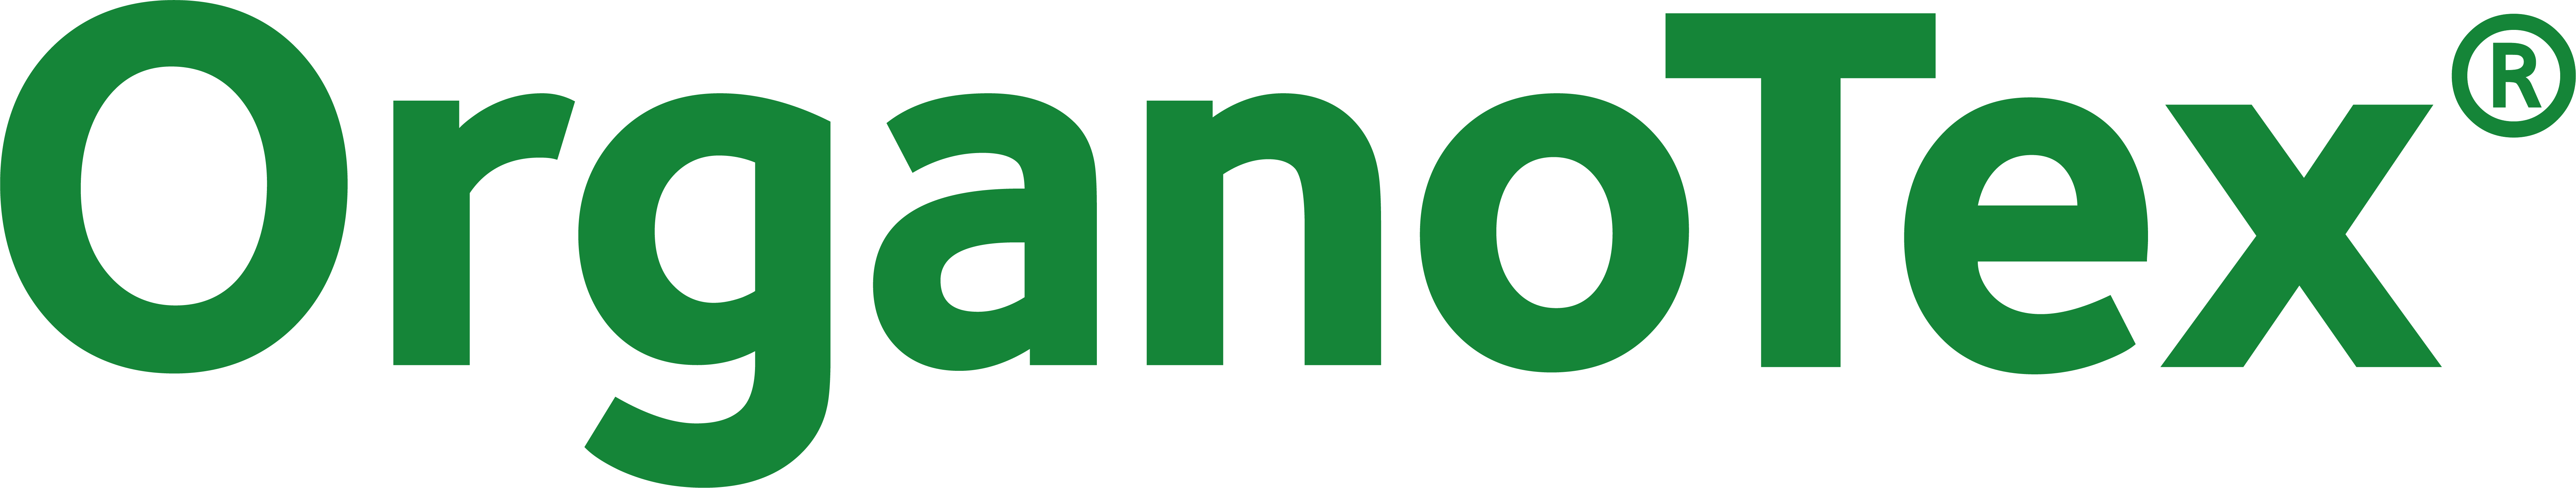 Organotex logo